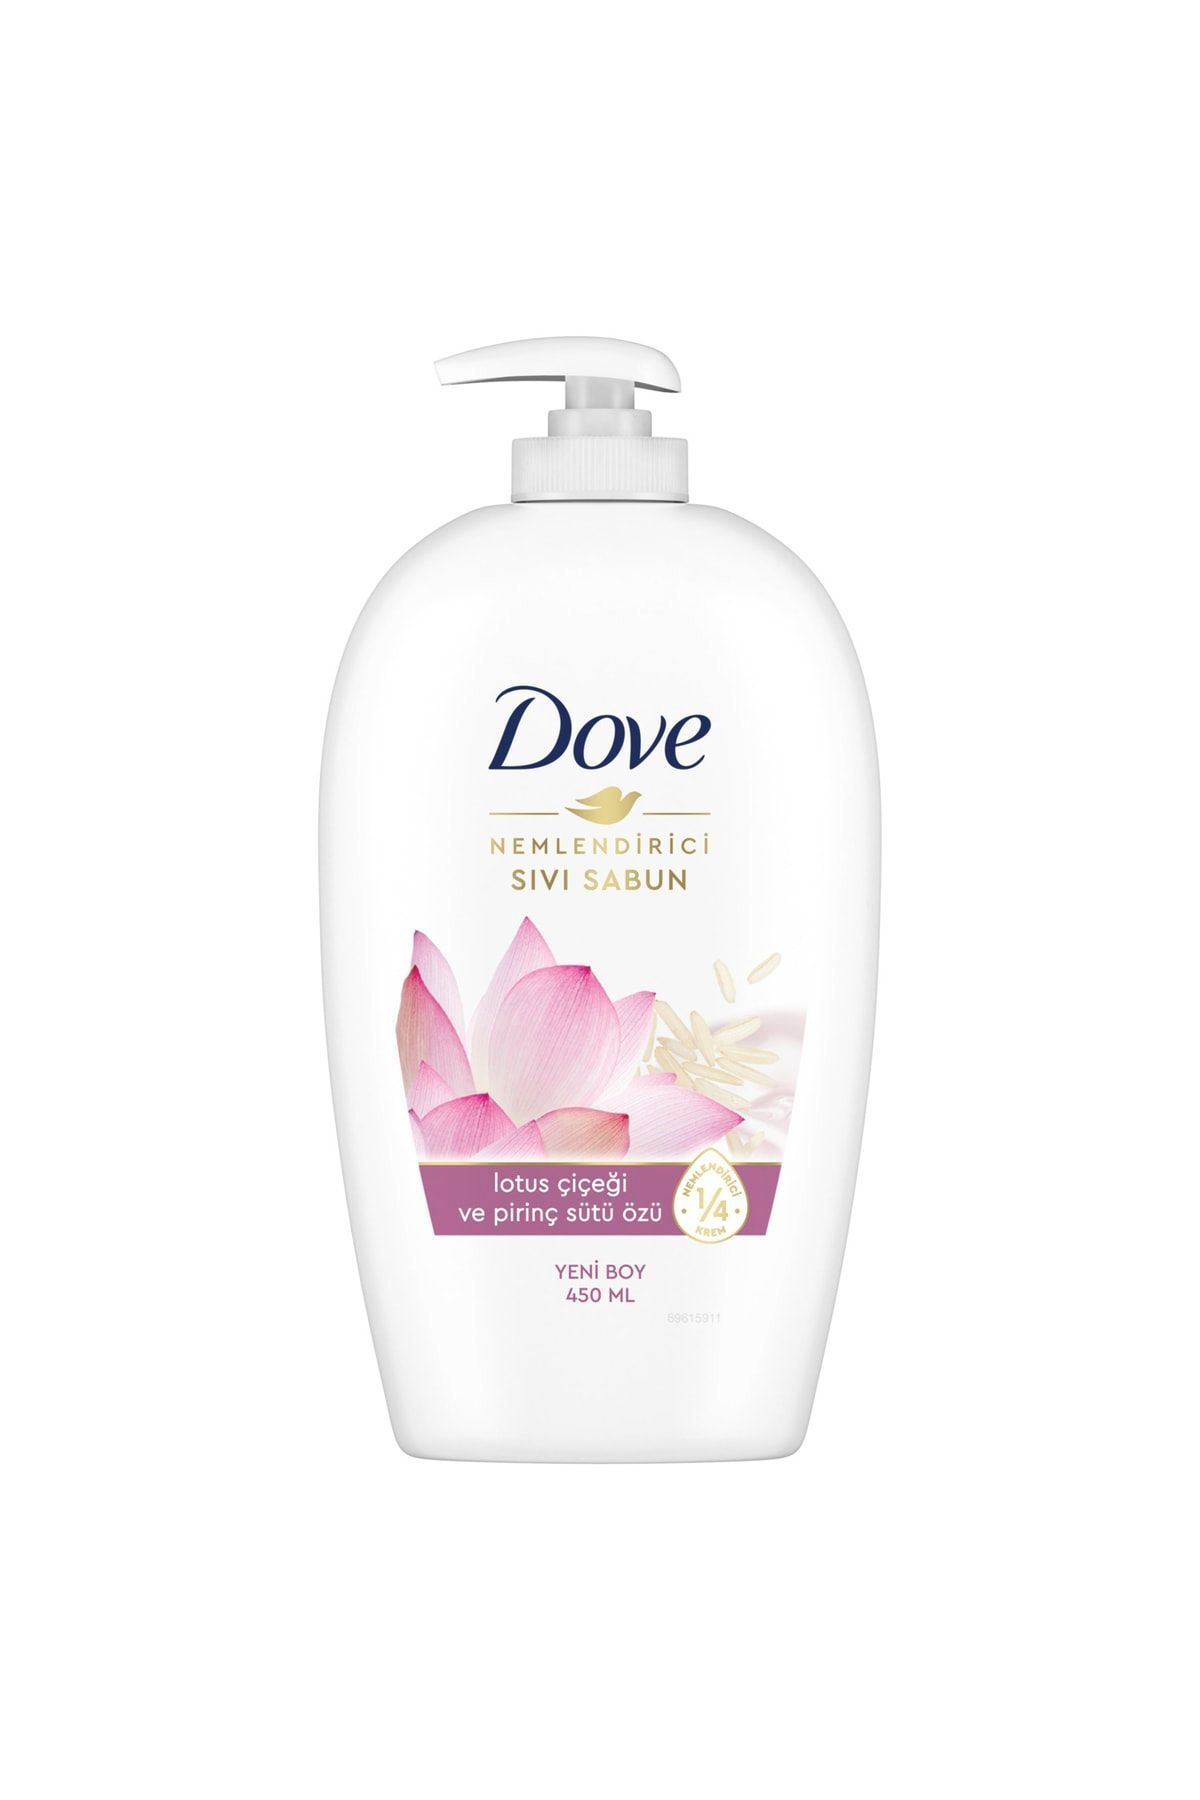 Dove Lotus Çiçeği Ve Pirinç Sütü Özlü Nemlendirici Sıvı Sabun 450 ml